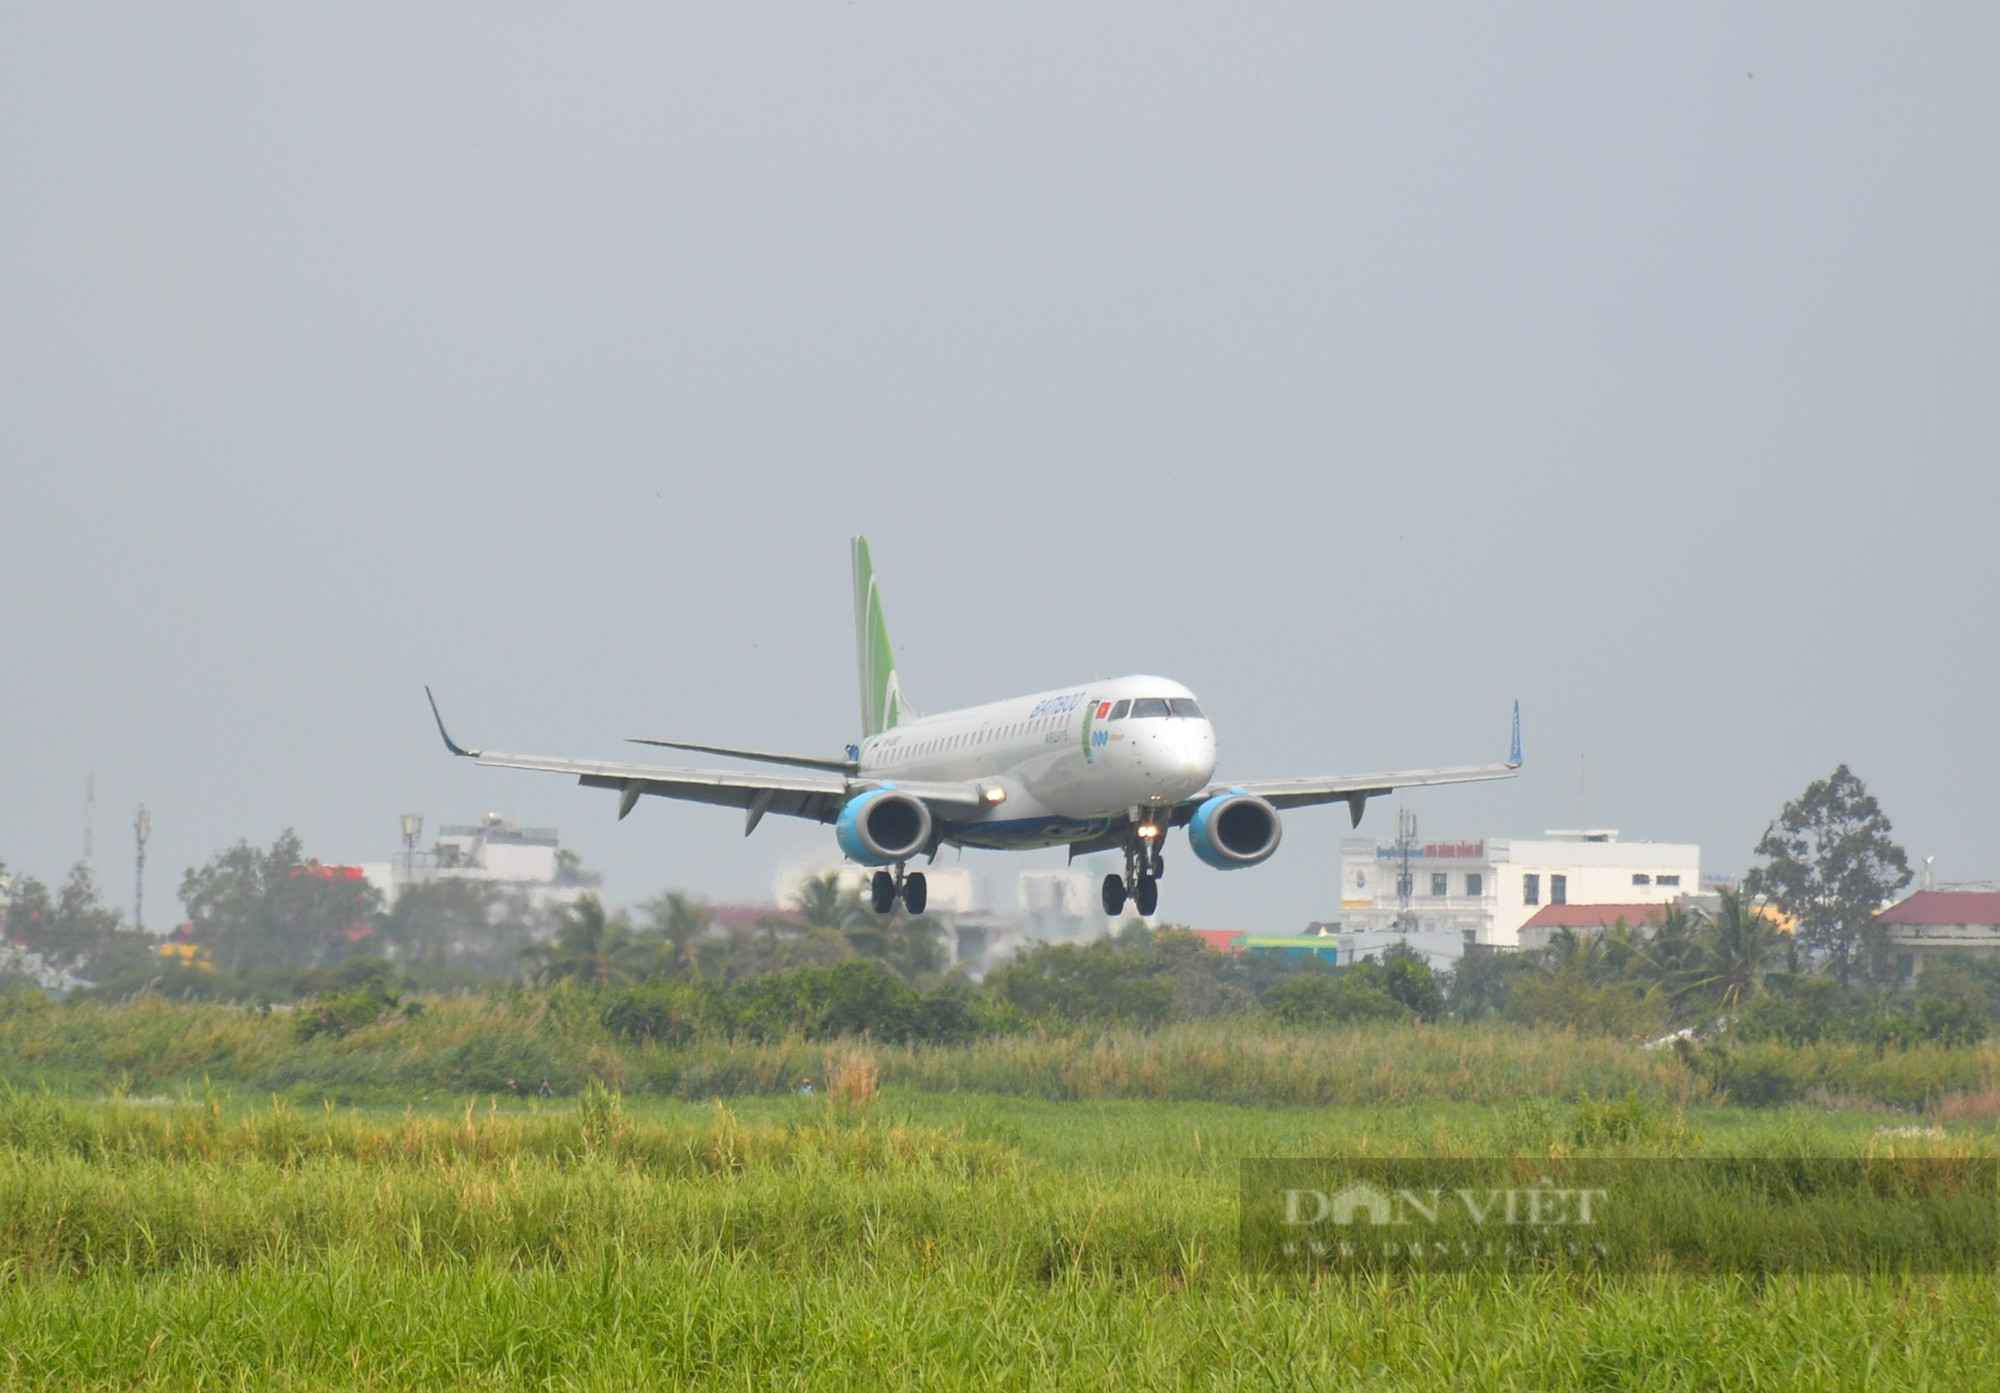 Chuyến bay thẳng Hà Nội - Cà Mau rút ngắn gần 2.000 km - Ảnh 1.